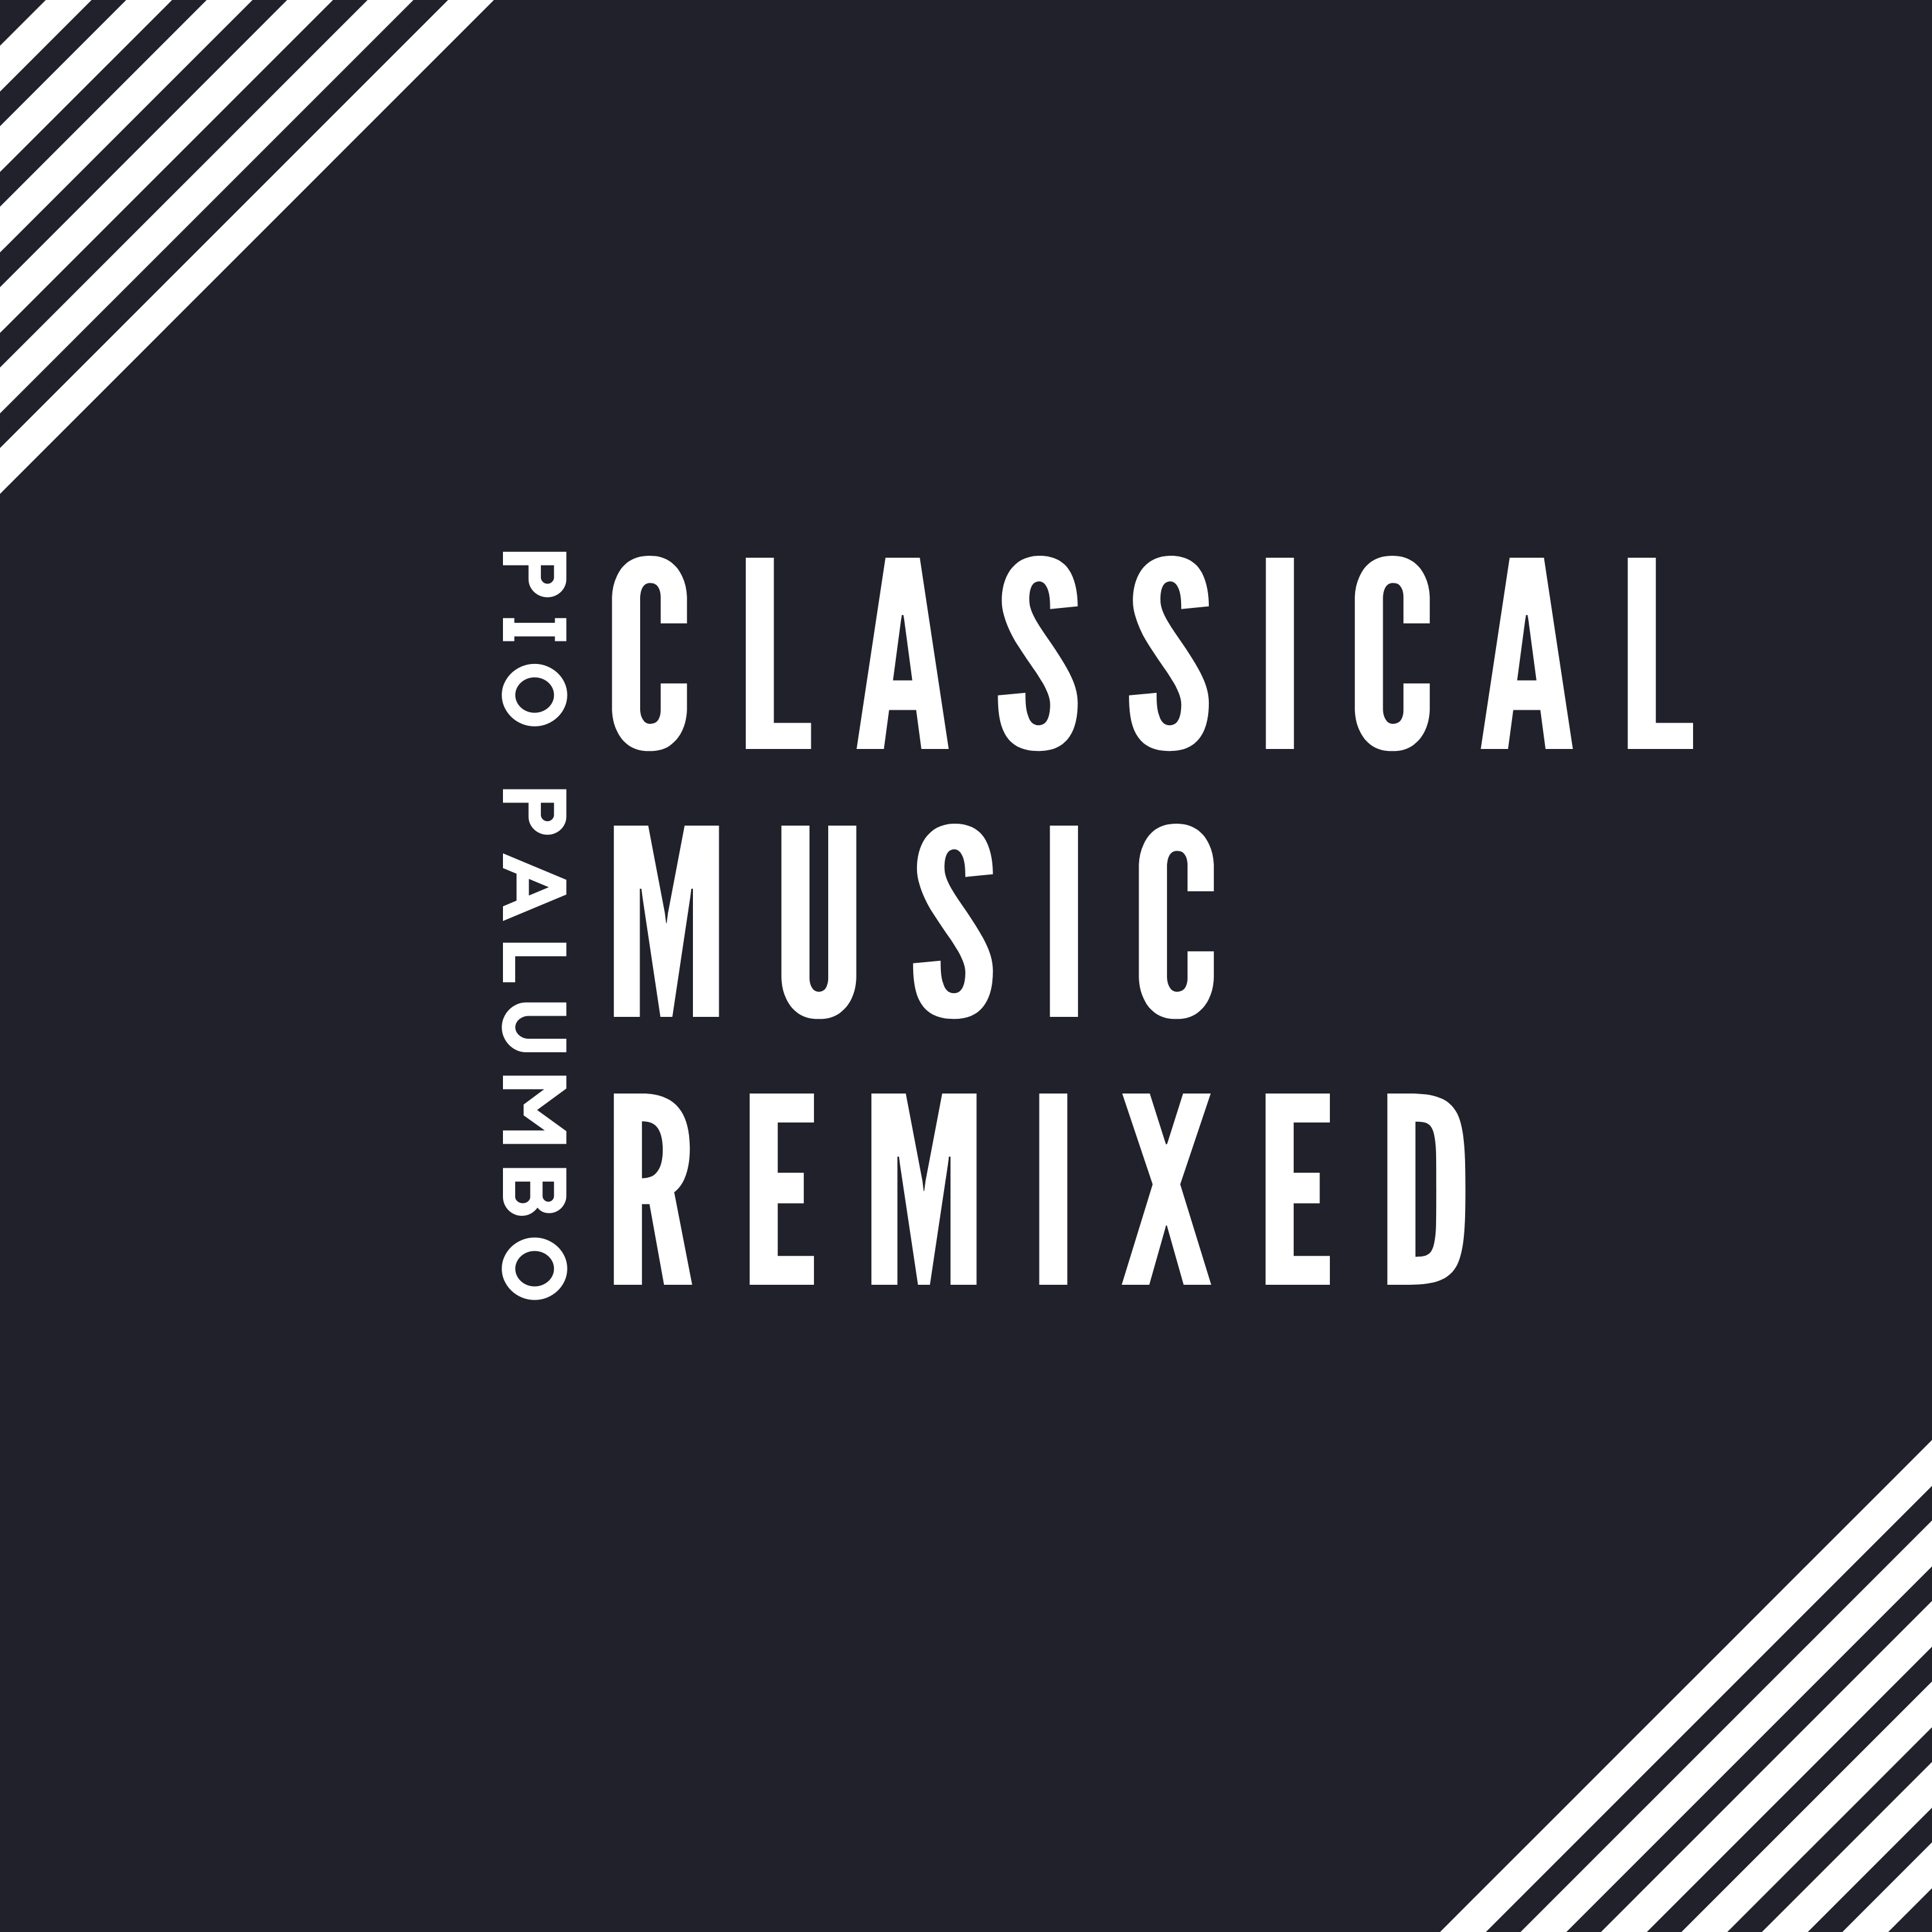 Pio Palumbo Classical Music Remix Copertina by Marianna Palumbo